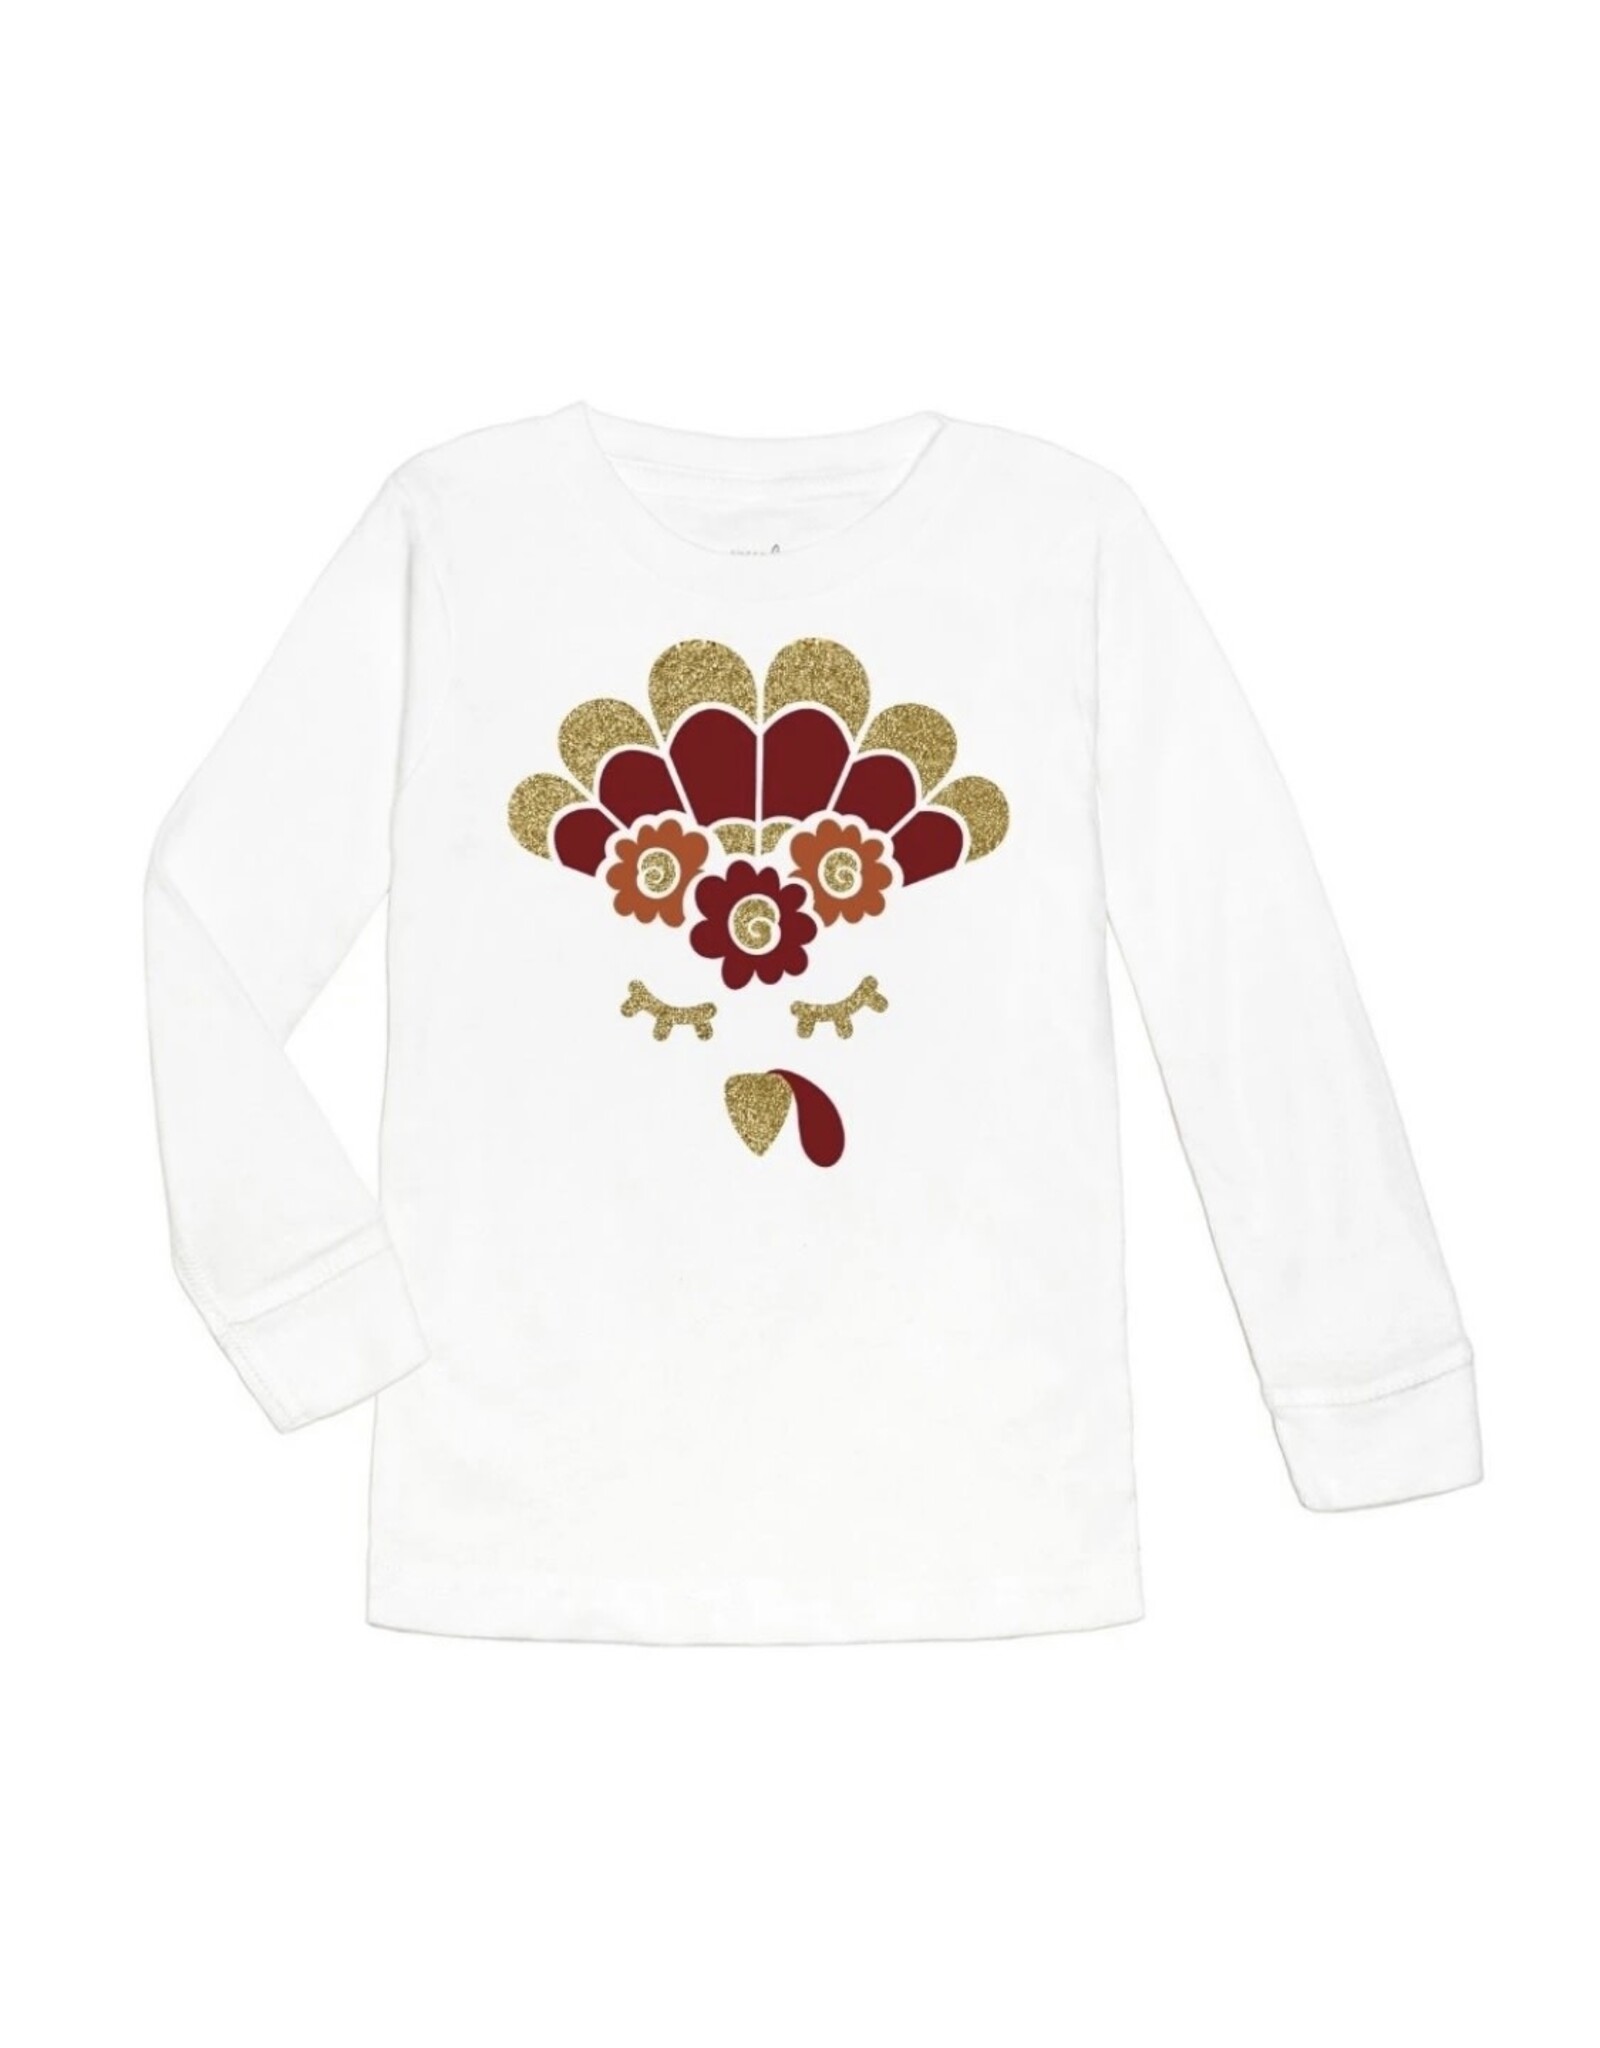 Sweet Wink- Turkey Flower Crown L/S Shirt